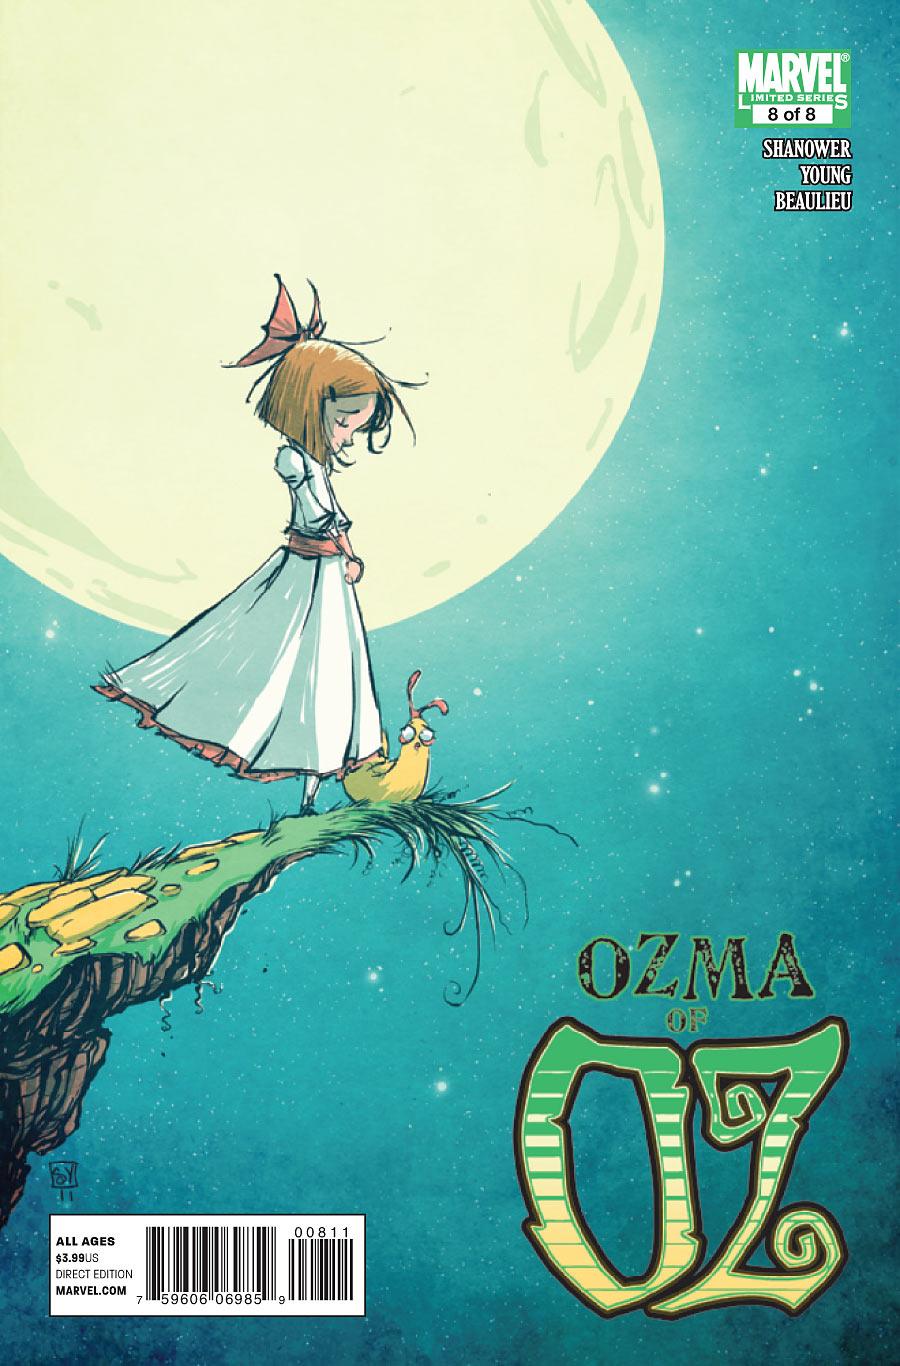 Ozma of Oz Vol. 1 #8